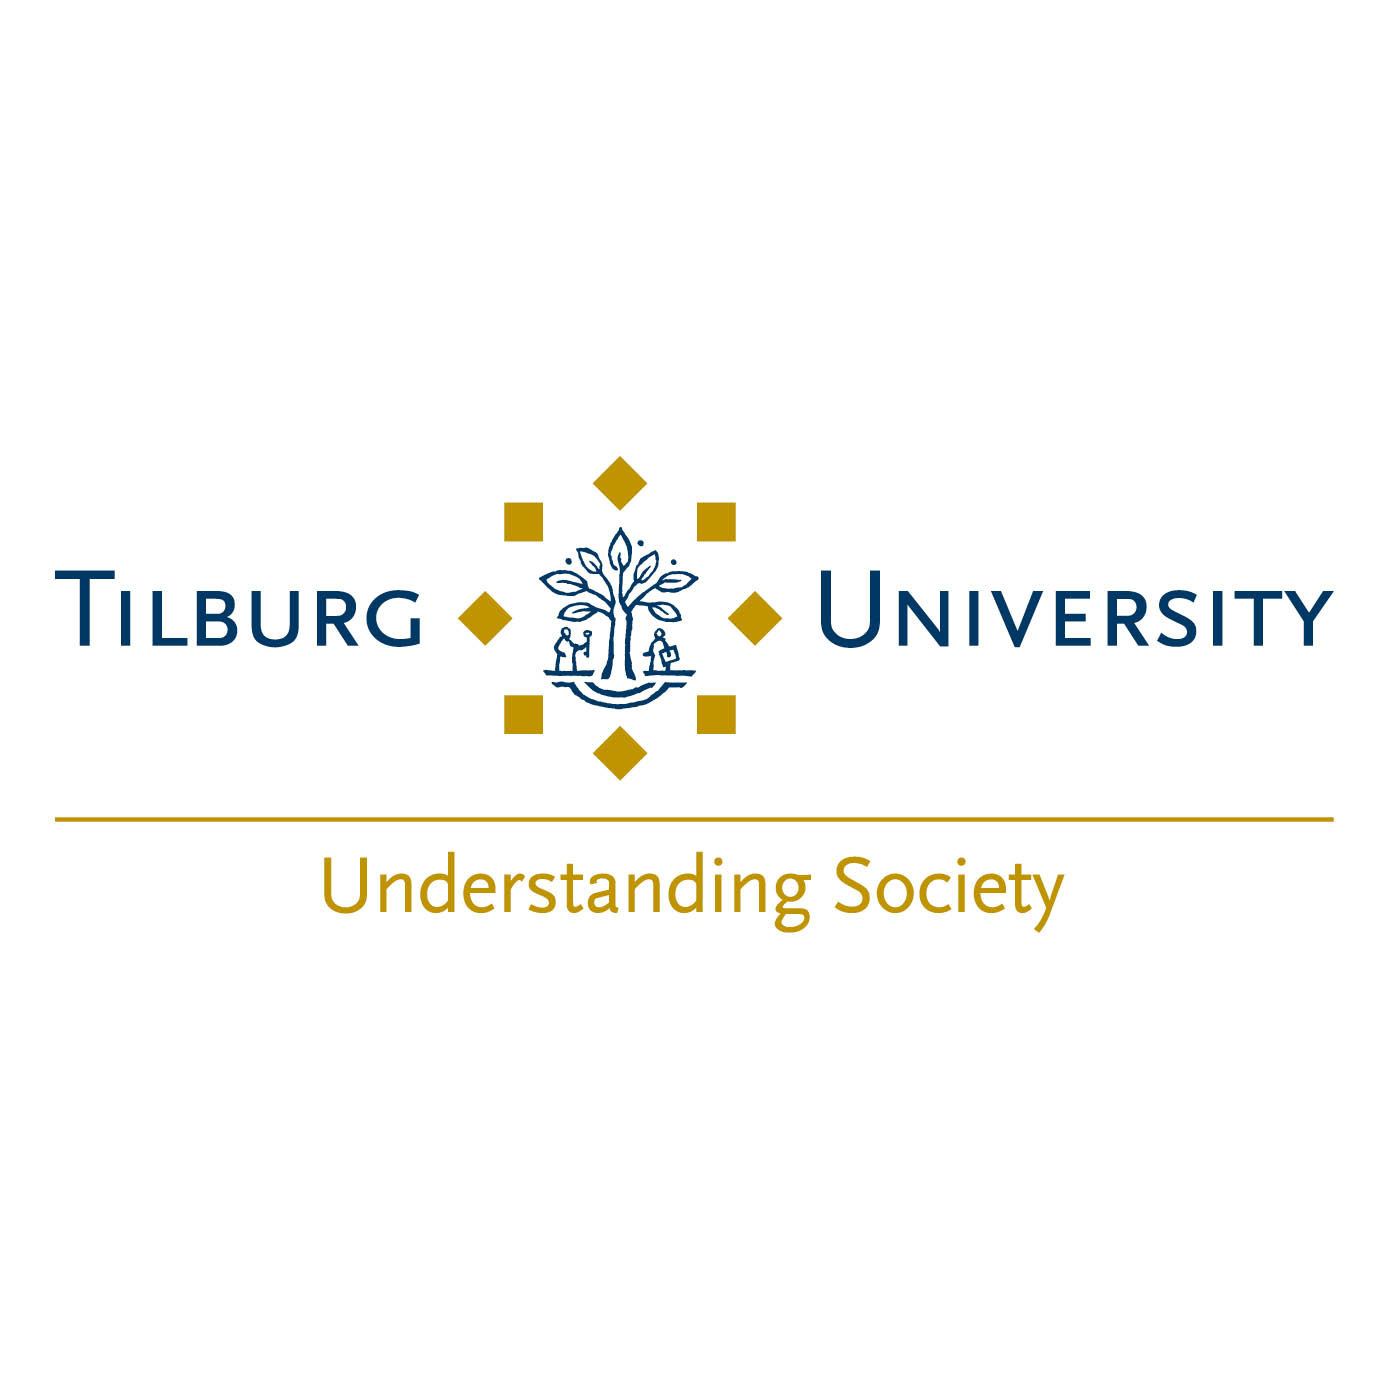 Logo Tilburg University - TILBURG